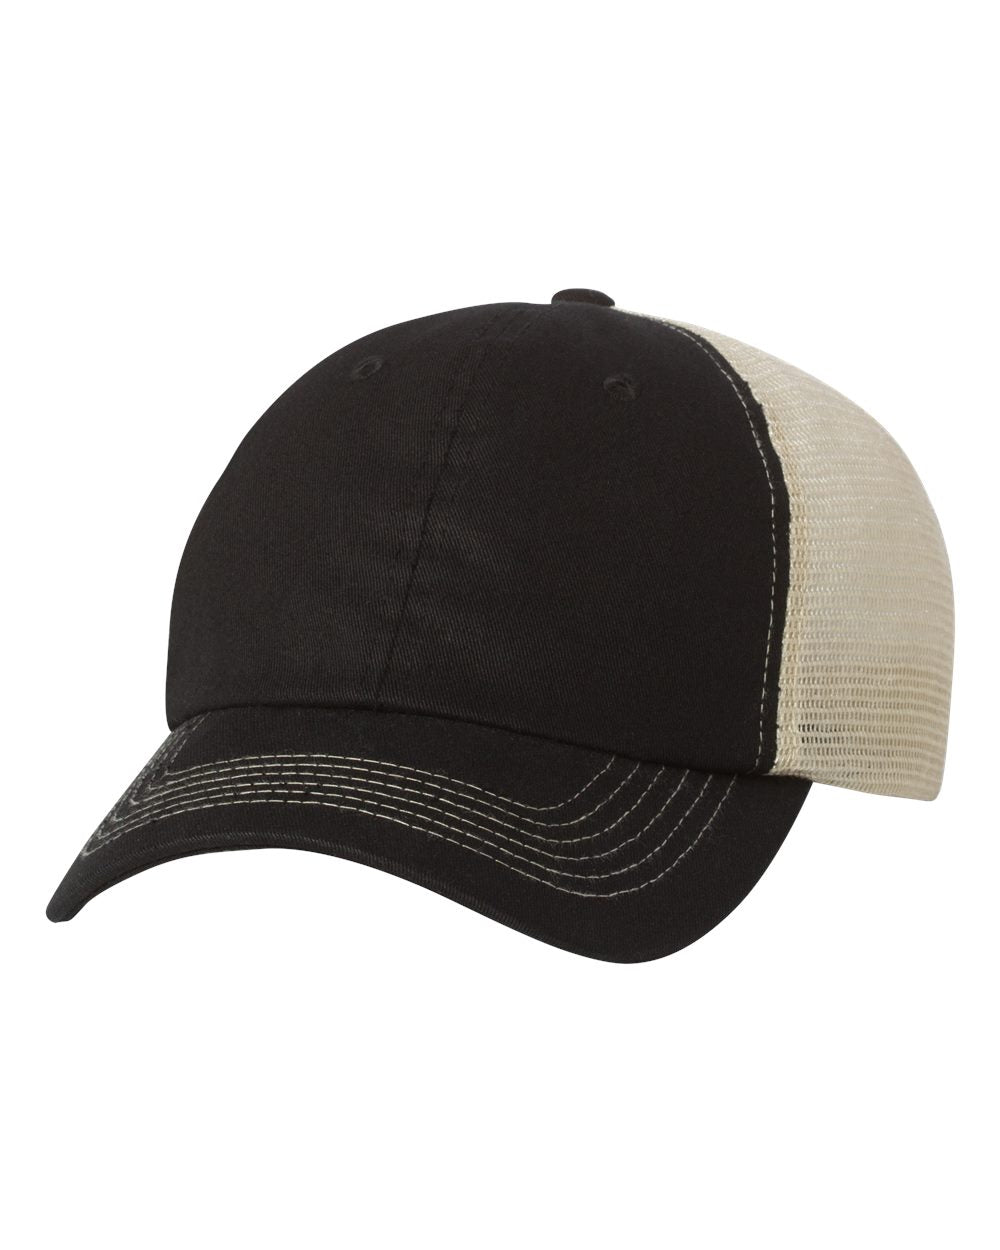 Sportsman Meshback Hat + Your Logo